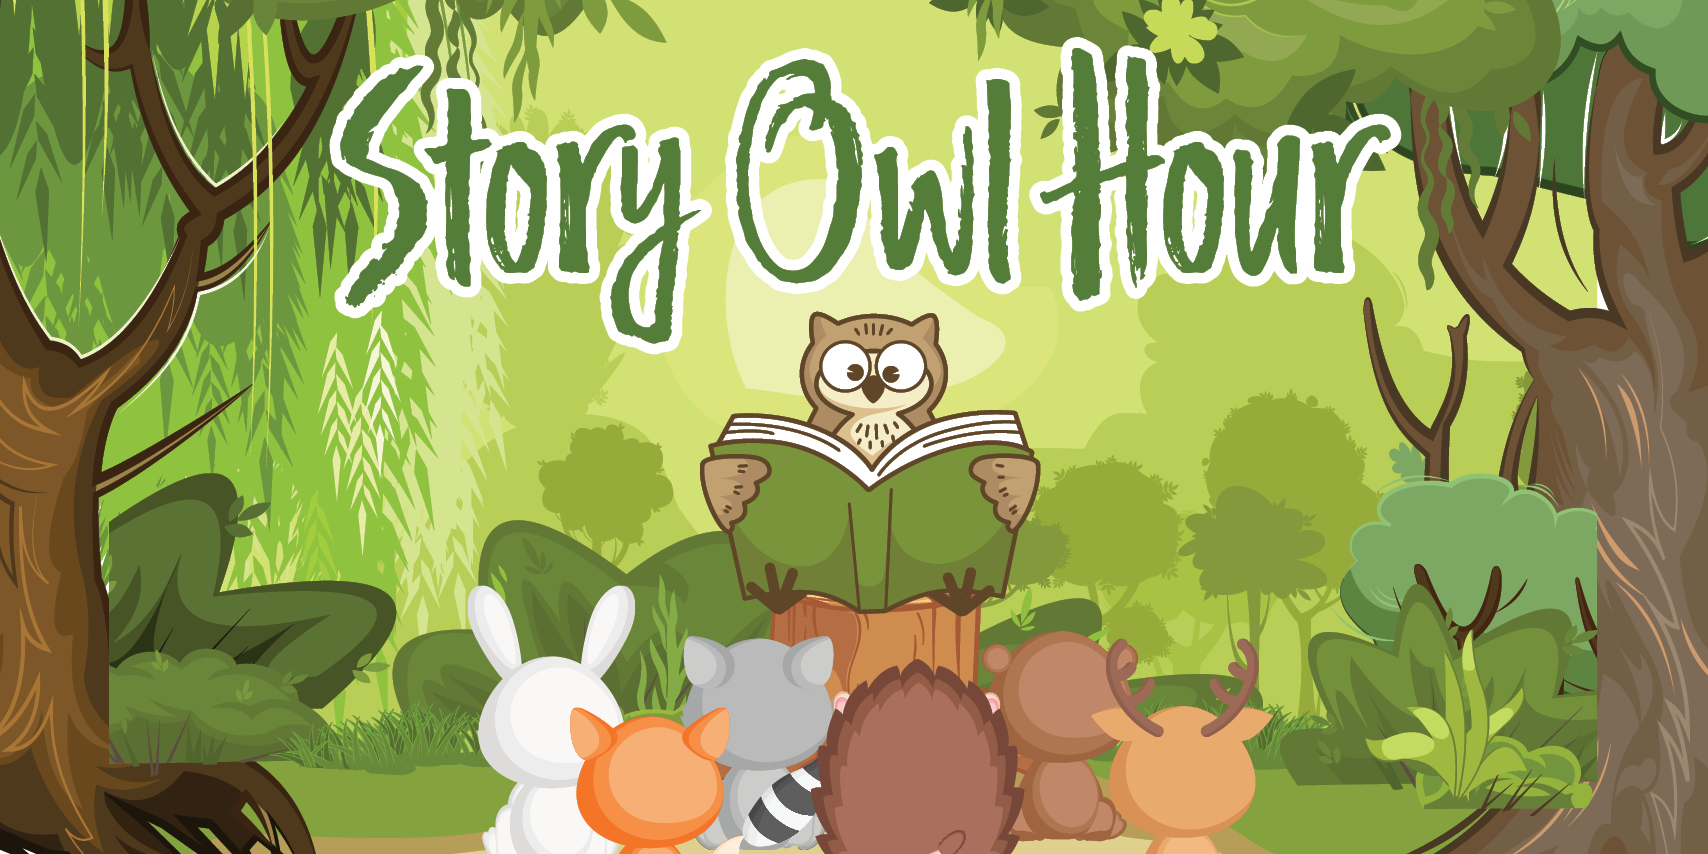 Story Owl Hour